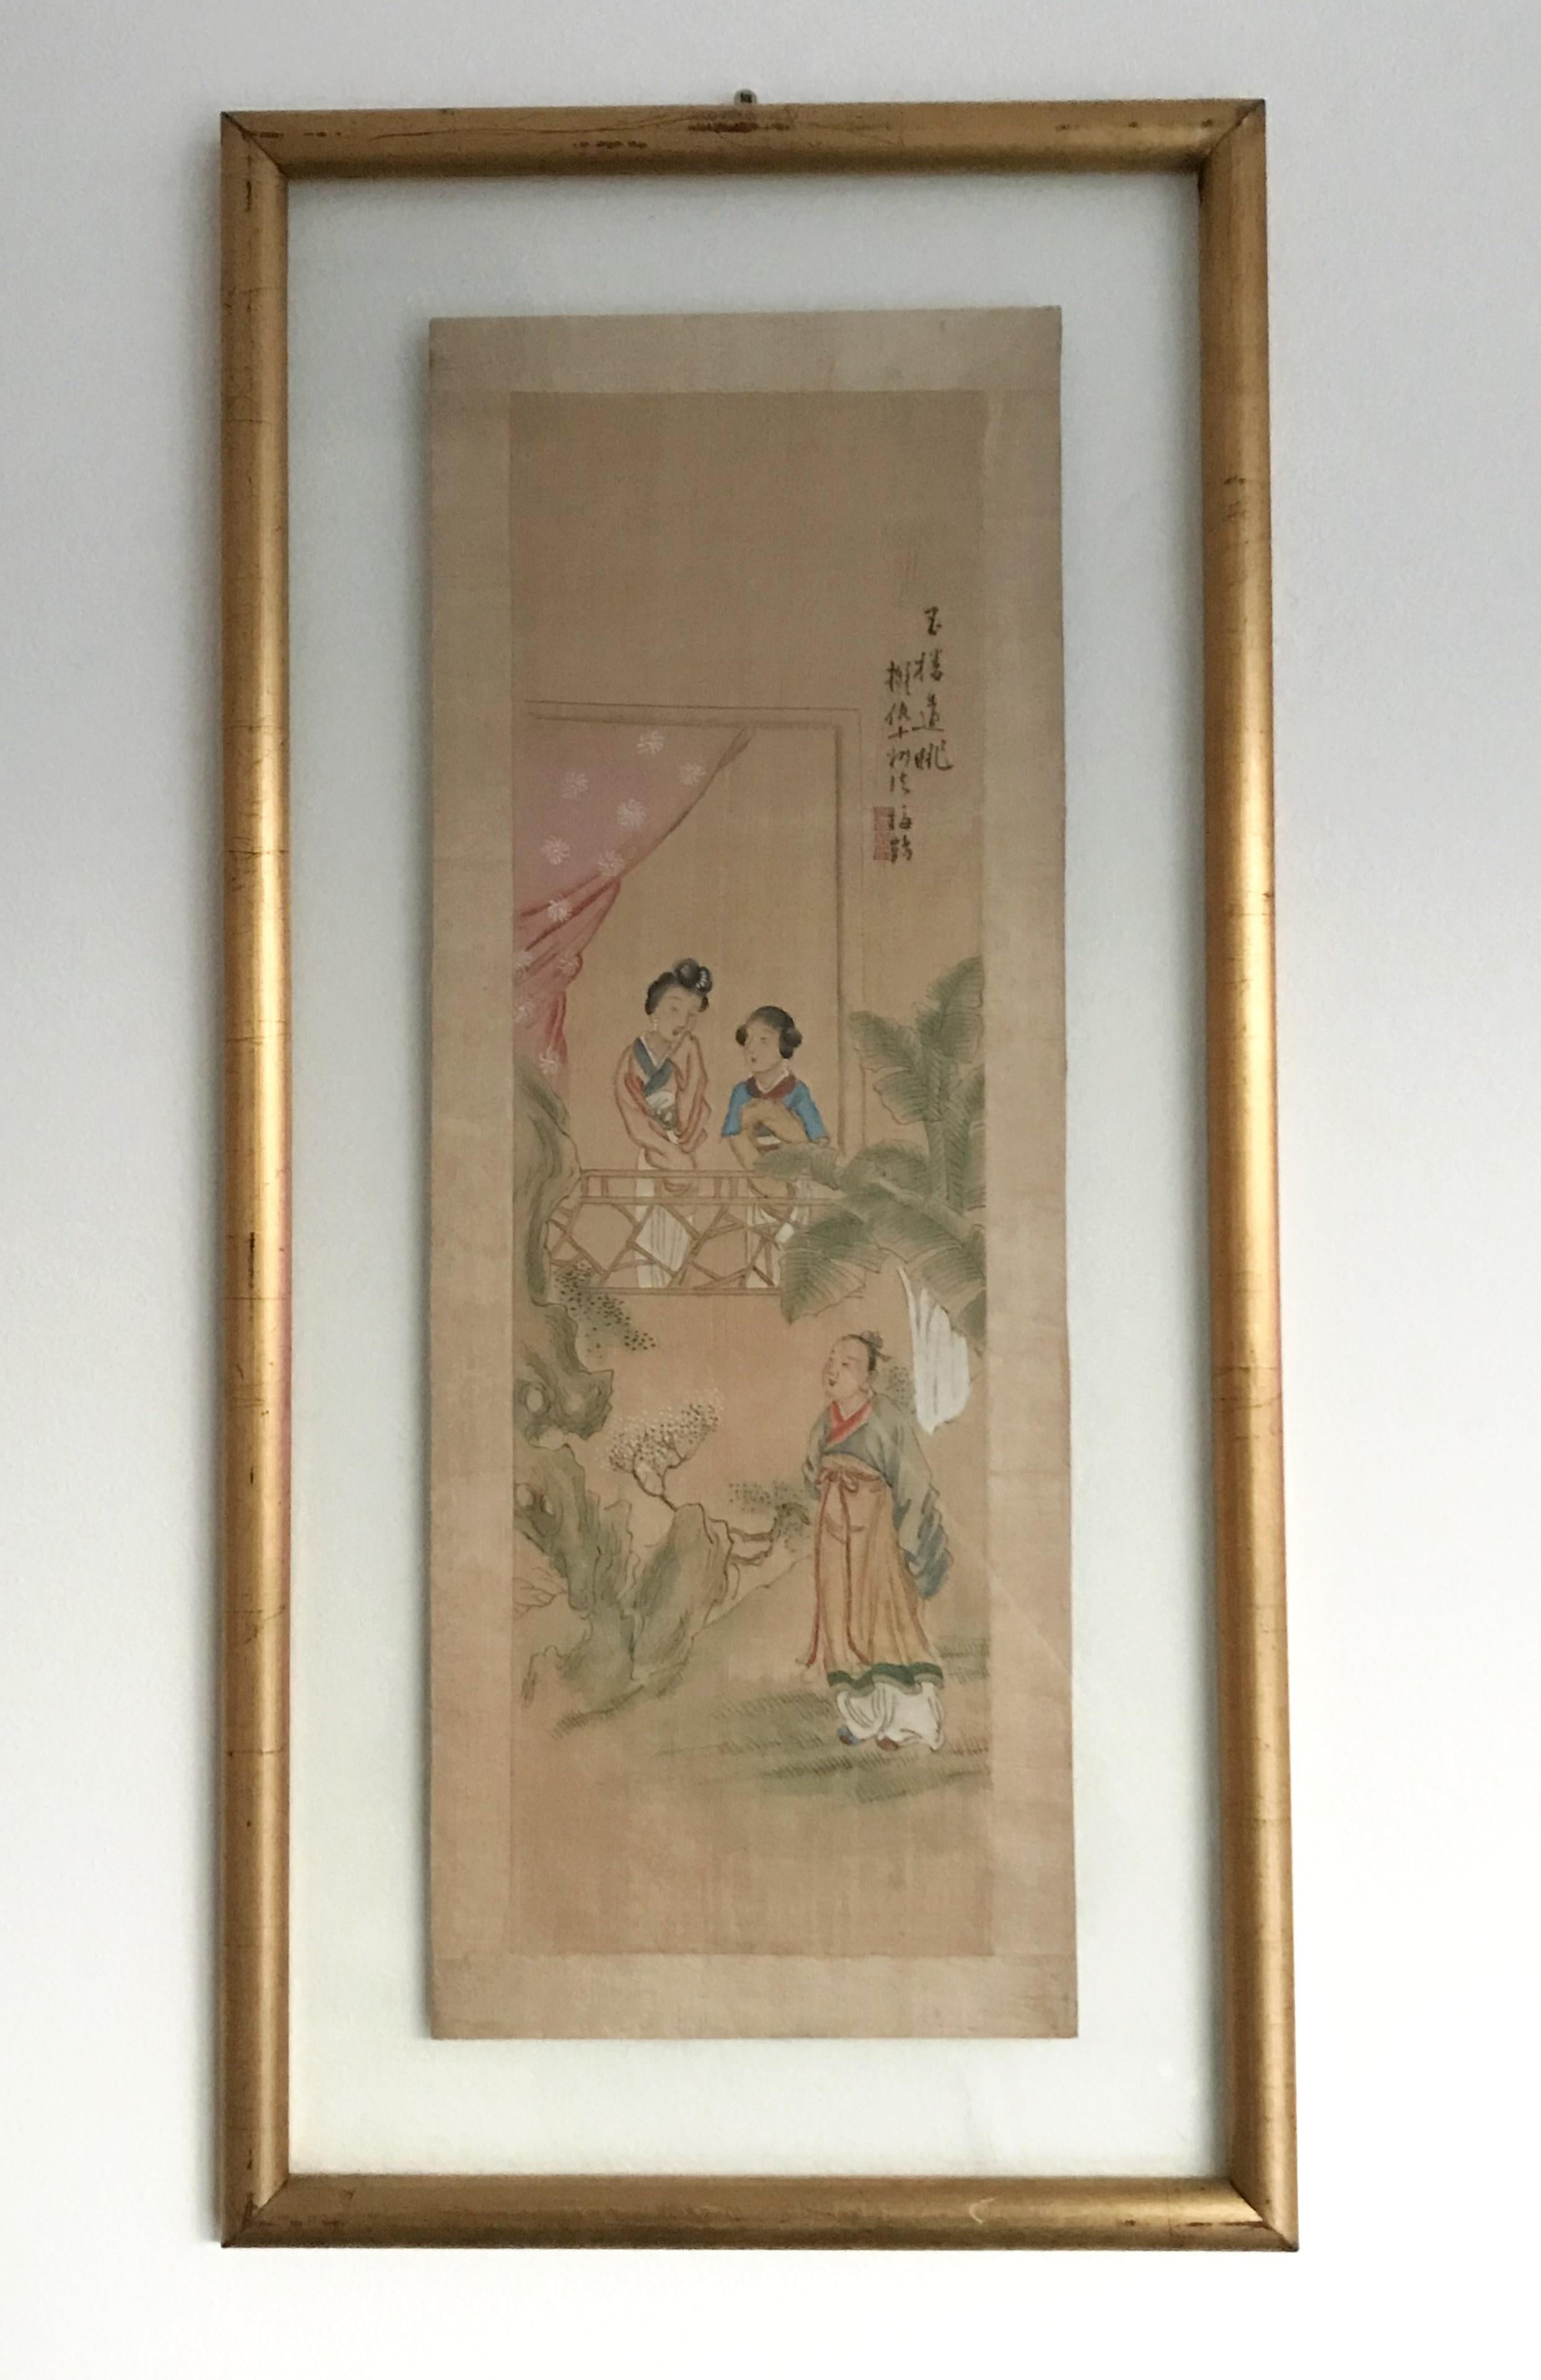 Ancienne aquarelle chinoise sur papier, dans un cadre en verre et bois doré, début du 20e siècle.
Dimensions : hauteur 27.5 pouces, largeur 13.5 pouces, profondeur 0.75 pouces
1 en stock à Los Angeles
Référence commande : FABIOLTD F229